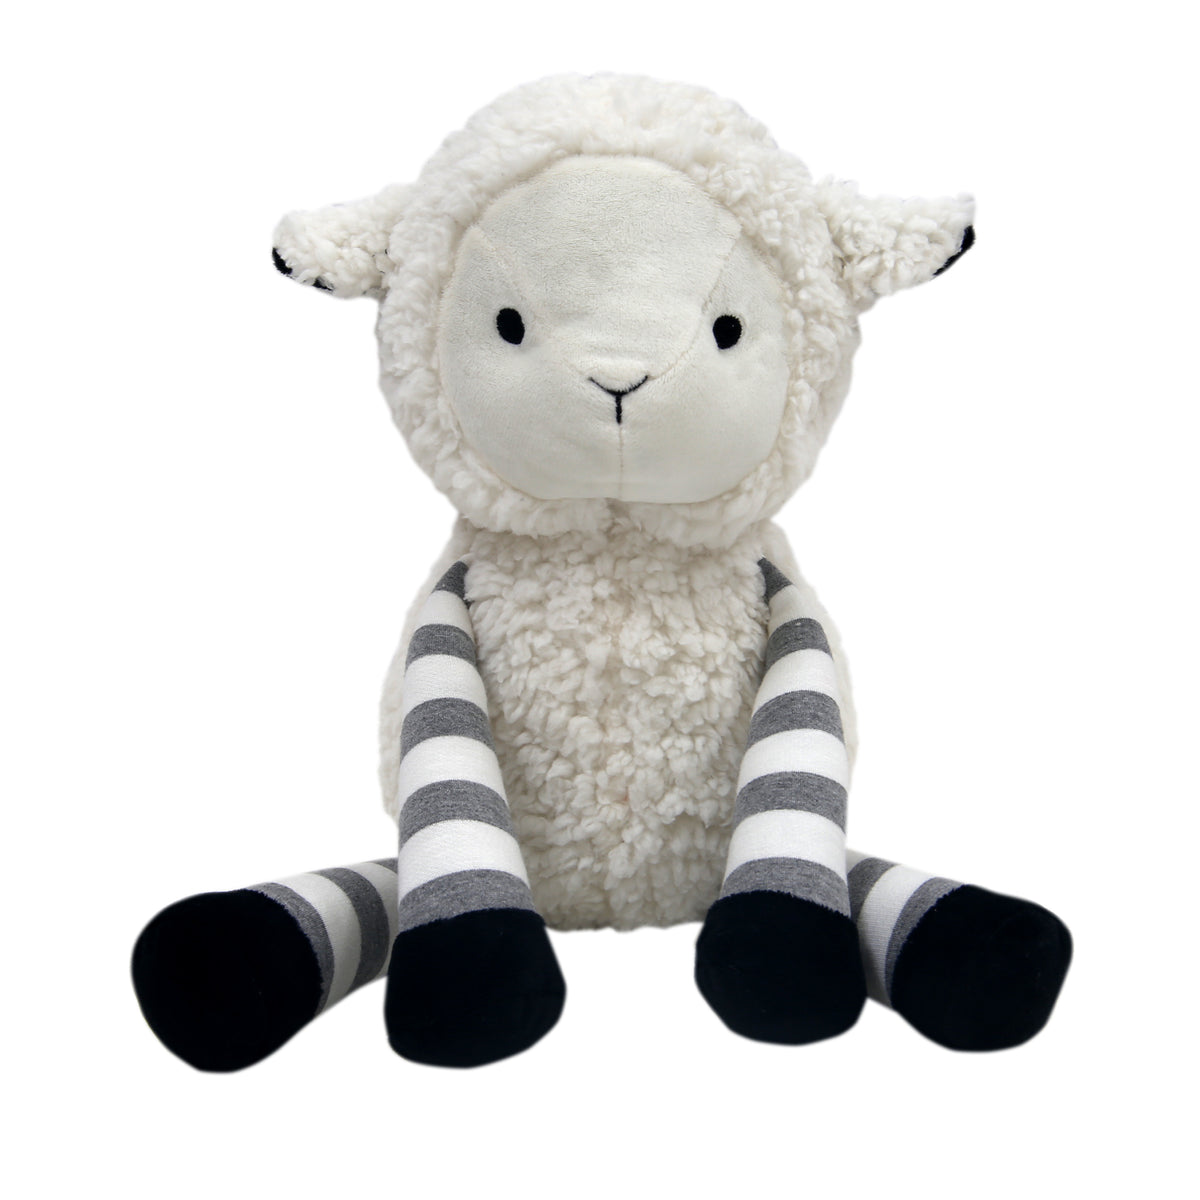 Little Sheep White/Gray Plush Lamb Stuffed Animal Toy - Ivy – Lambs & Ivy